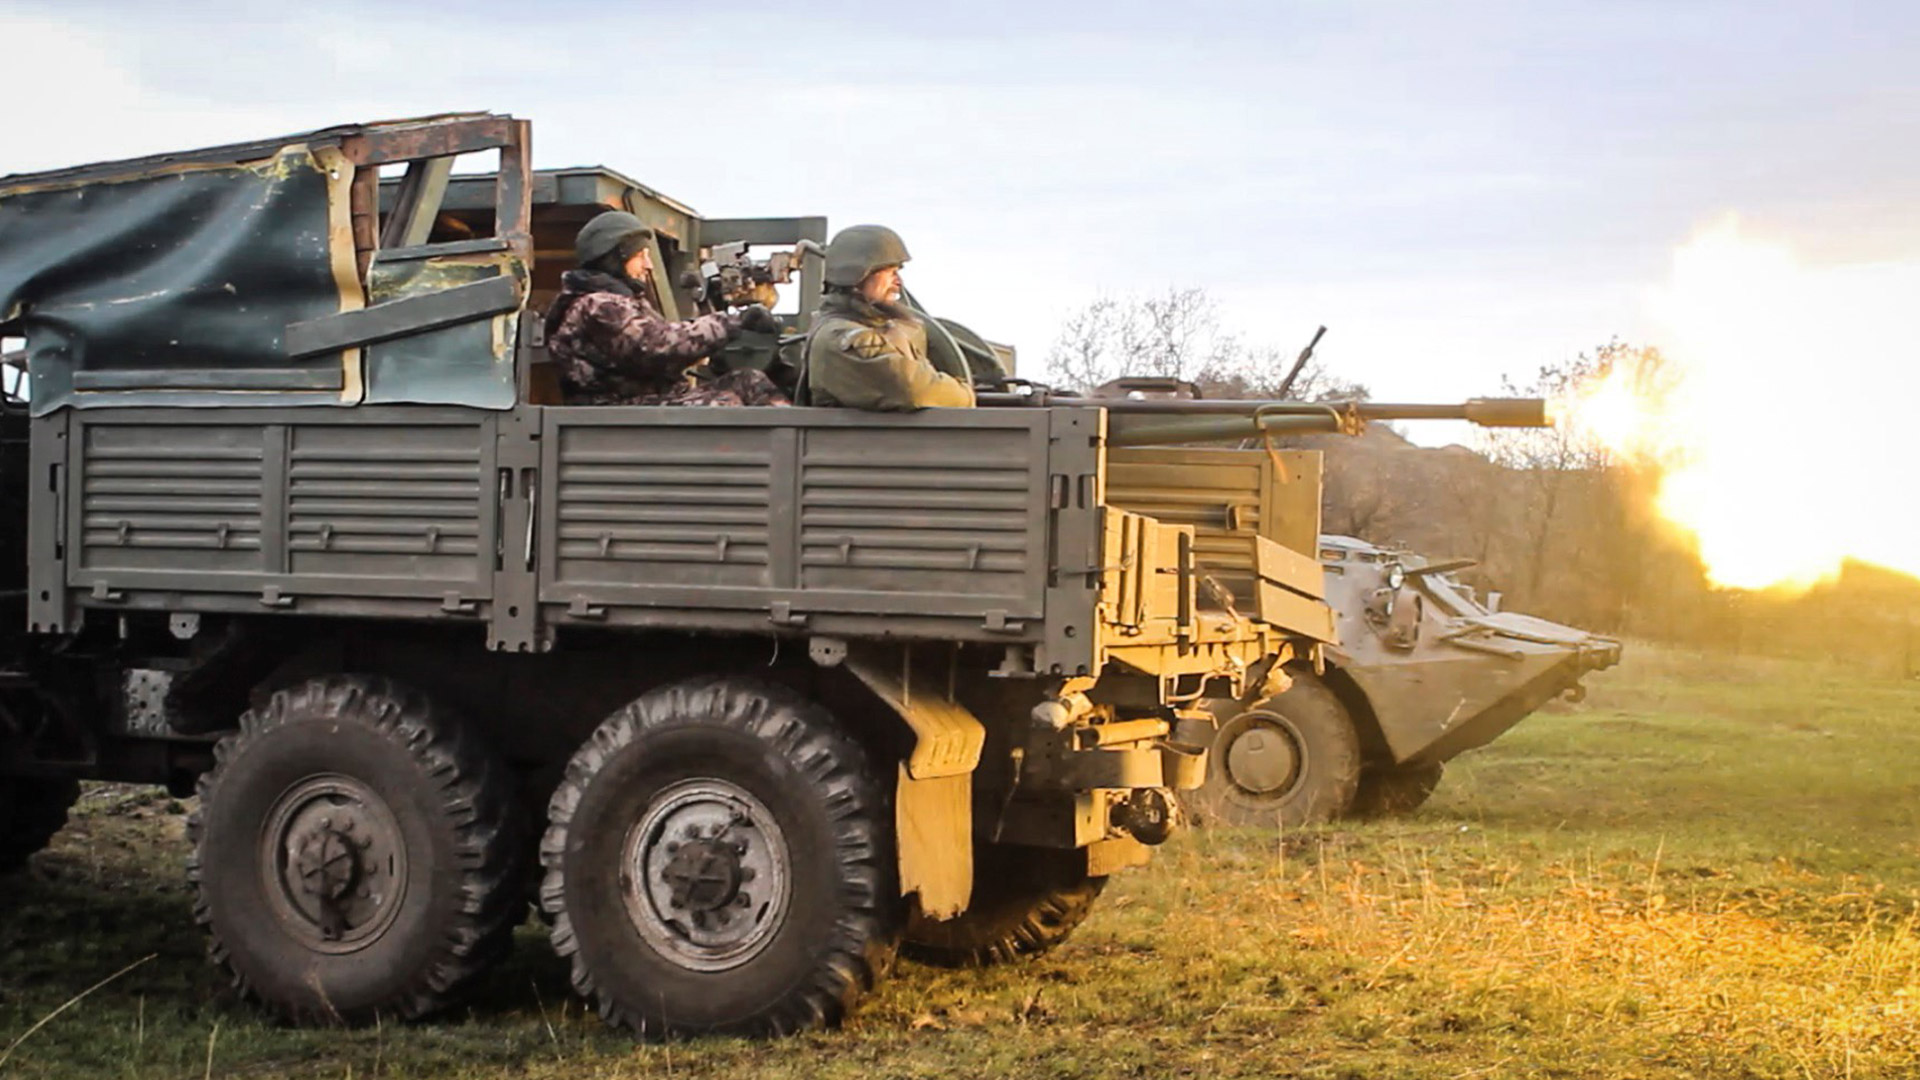 Brigada insurgente del Donbass, región oriental de Ucrania controlada por fuerzas prorrusas.